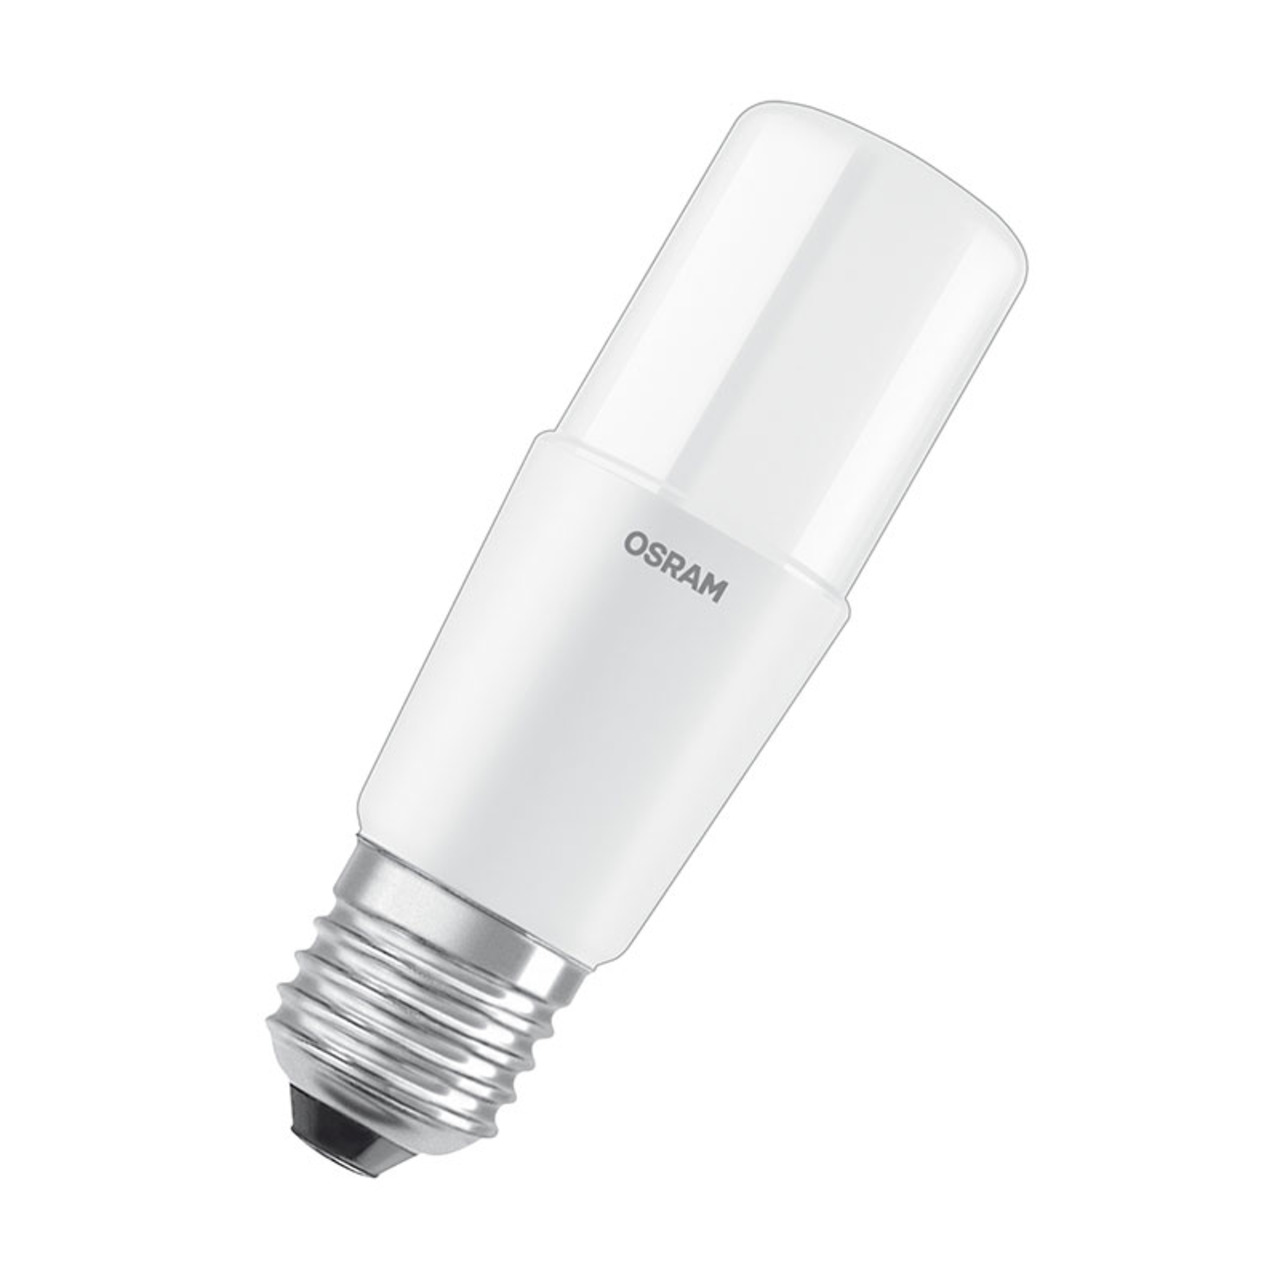 OSRAM LED STAR 8-W-LED-Lampe E27- warmweiss- schlanke Ausführung- Ersatz für 60-W-Glühlampen